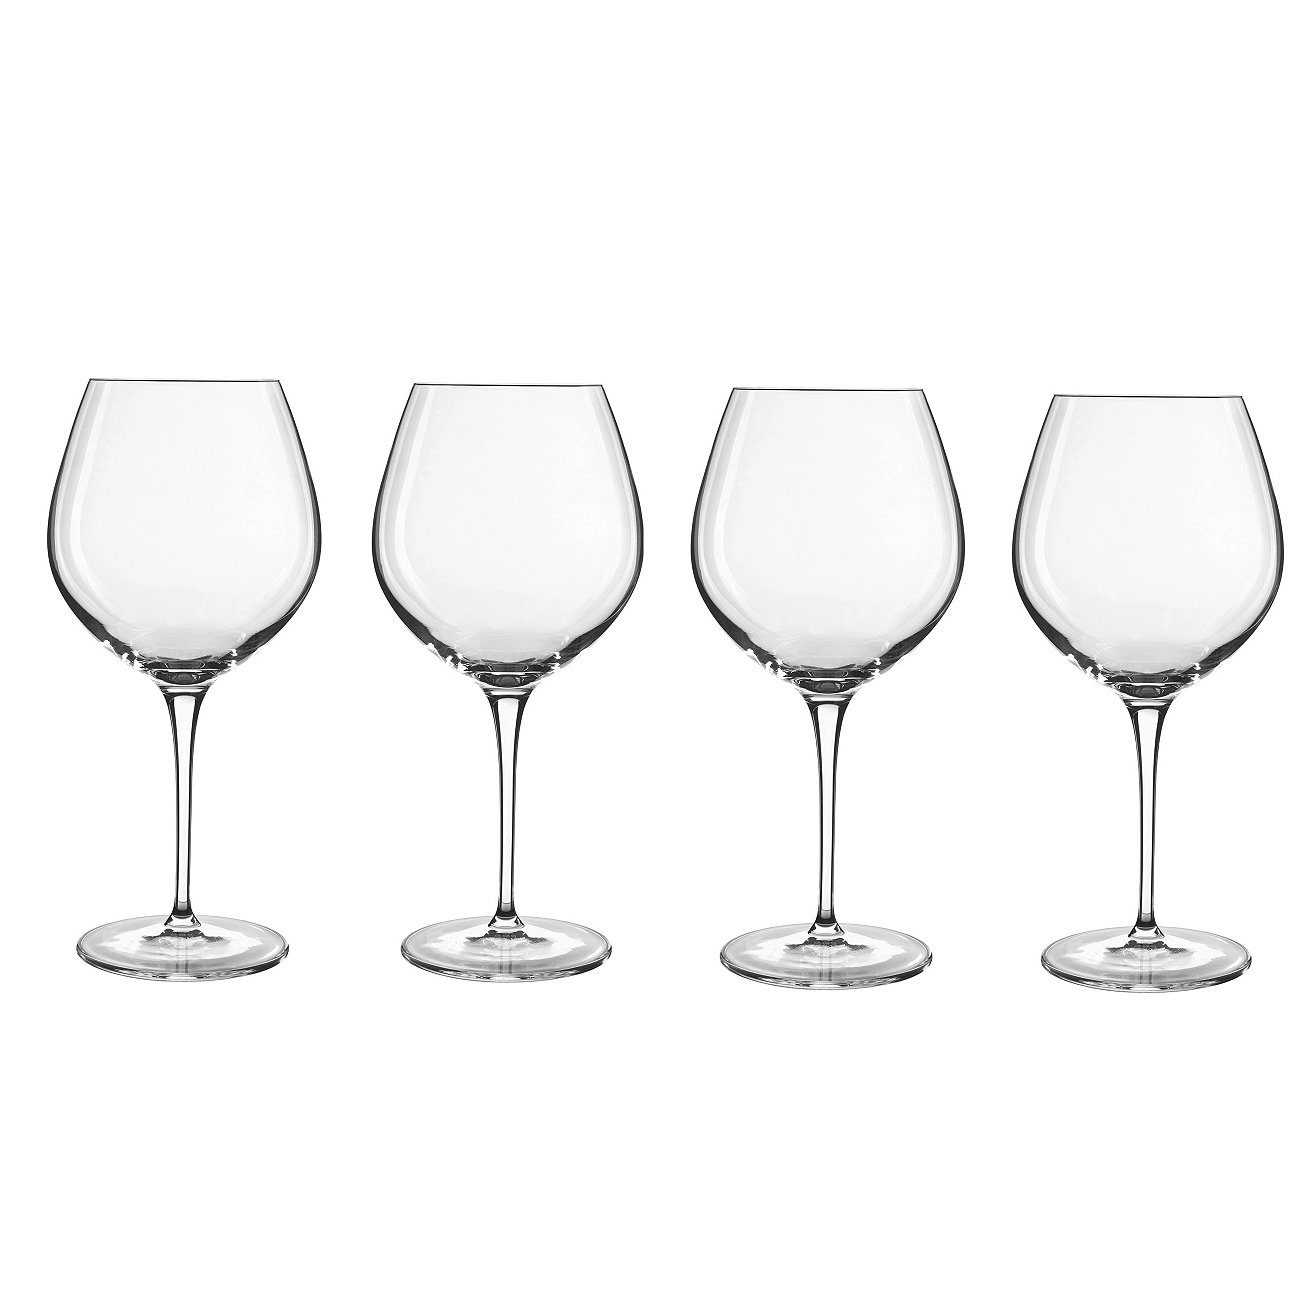 Посуда, универсальные бокалы для вина Crescendo, набор из 4 шт. Luigi Bormioli